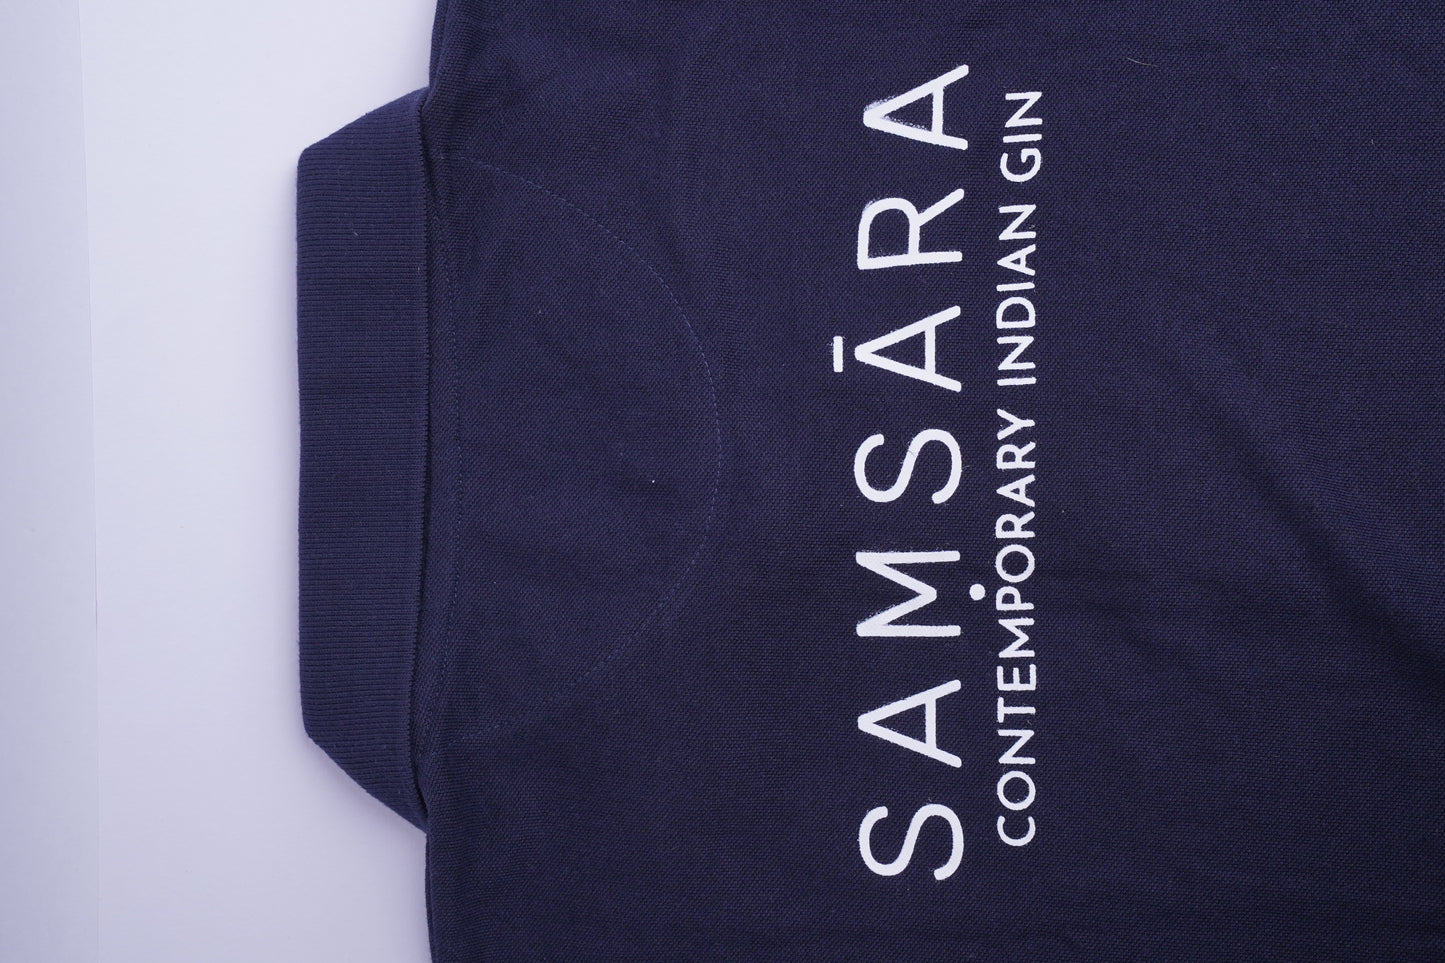 Samsara T-Shirts